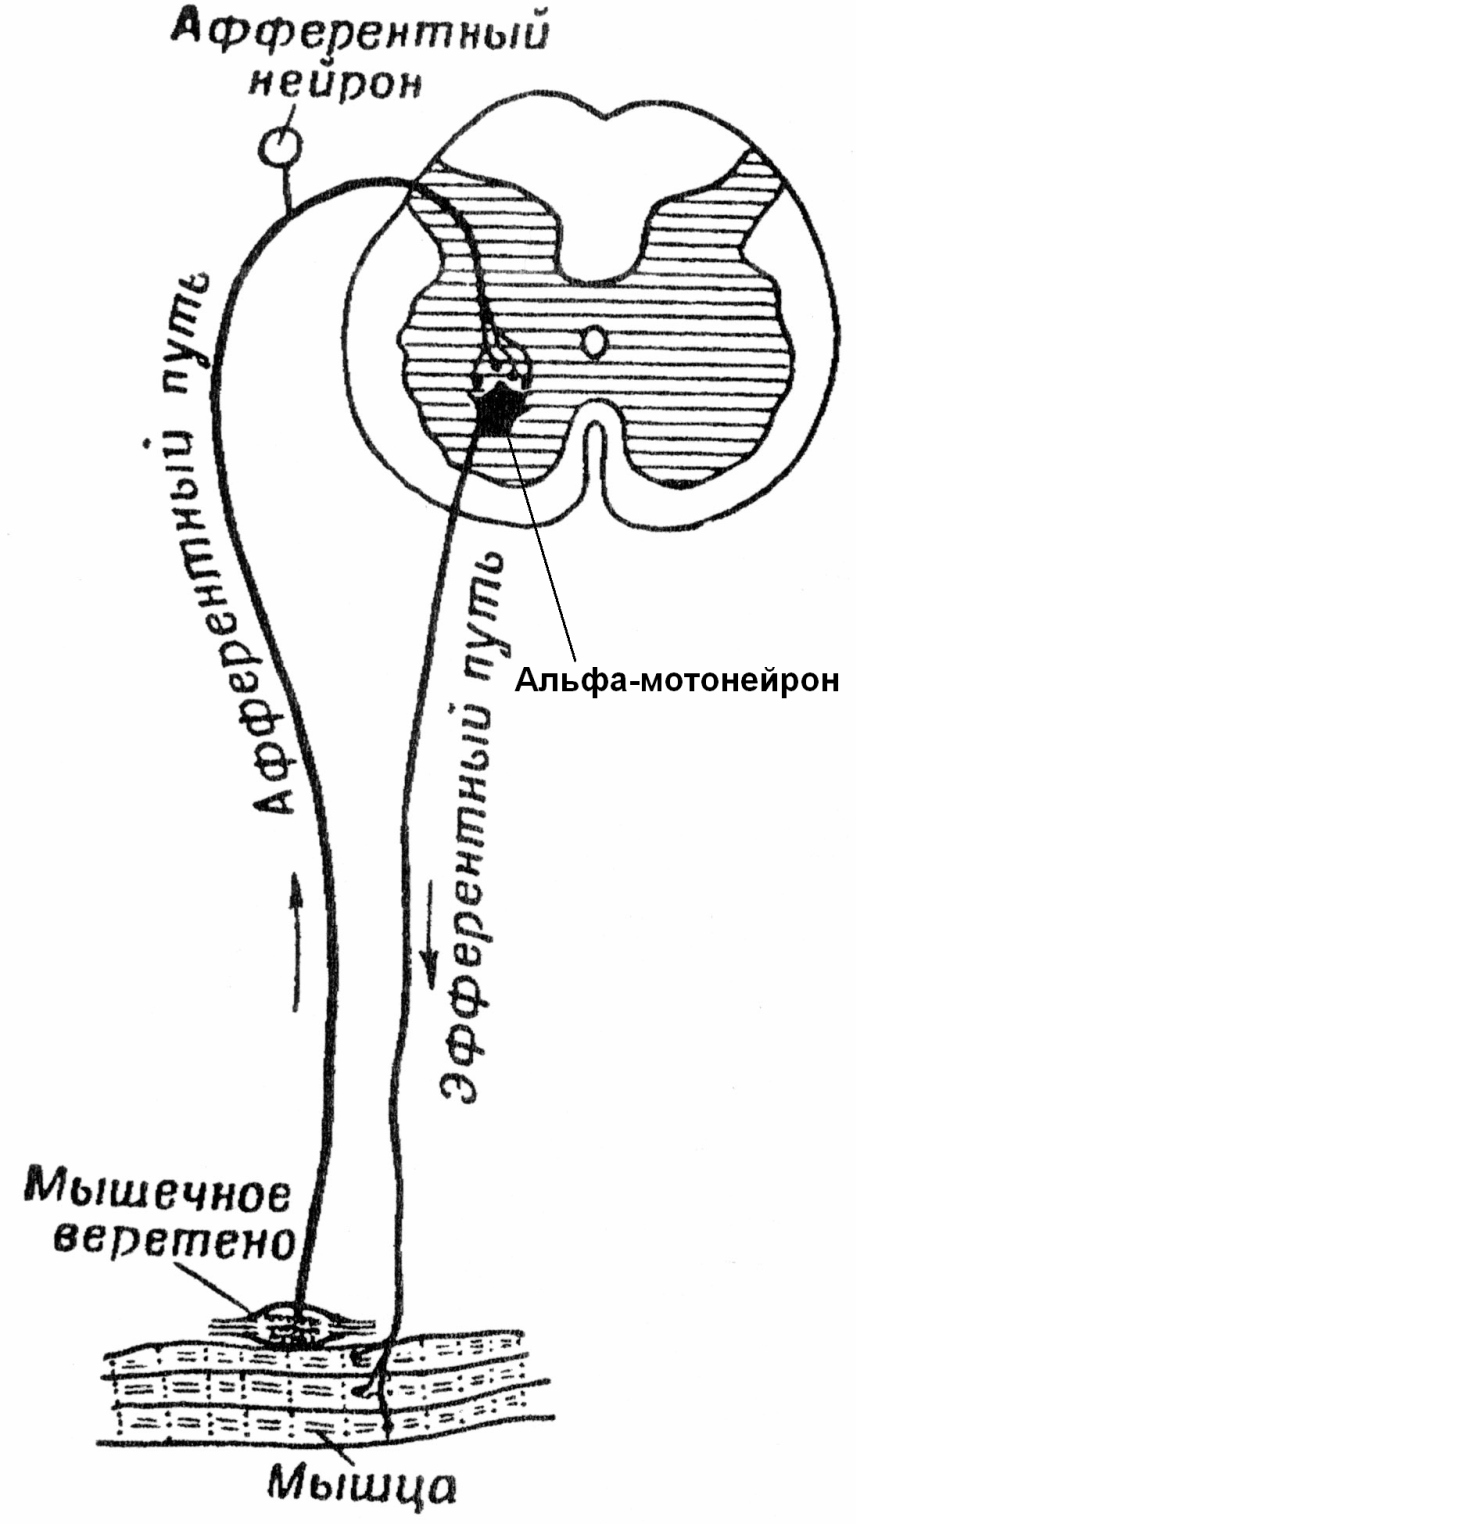 Рефлекторный тонус. Схема дуги миотатического рефлекса. Схема рефлекторных дуг спинного мозга. Рефлекторная дуга проприоцептивного рефлекса. Регуляция мышечного тонуса спинальная рефлекторная дуга.